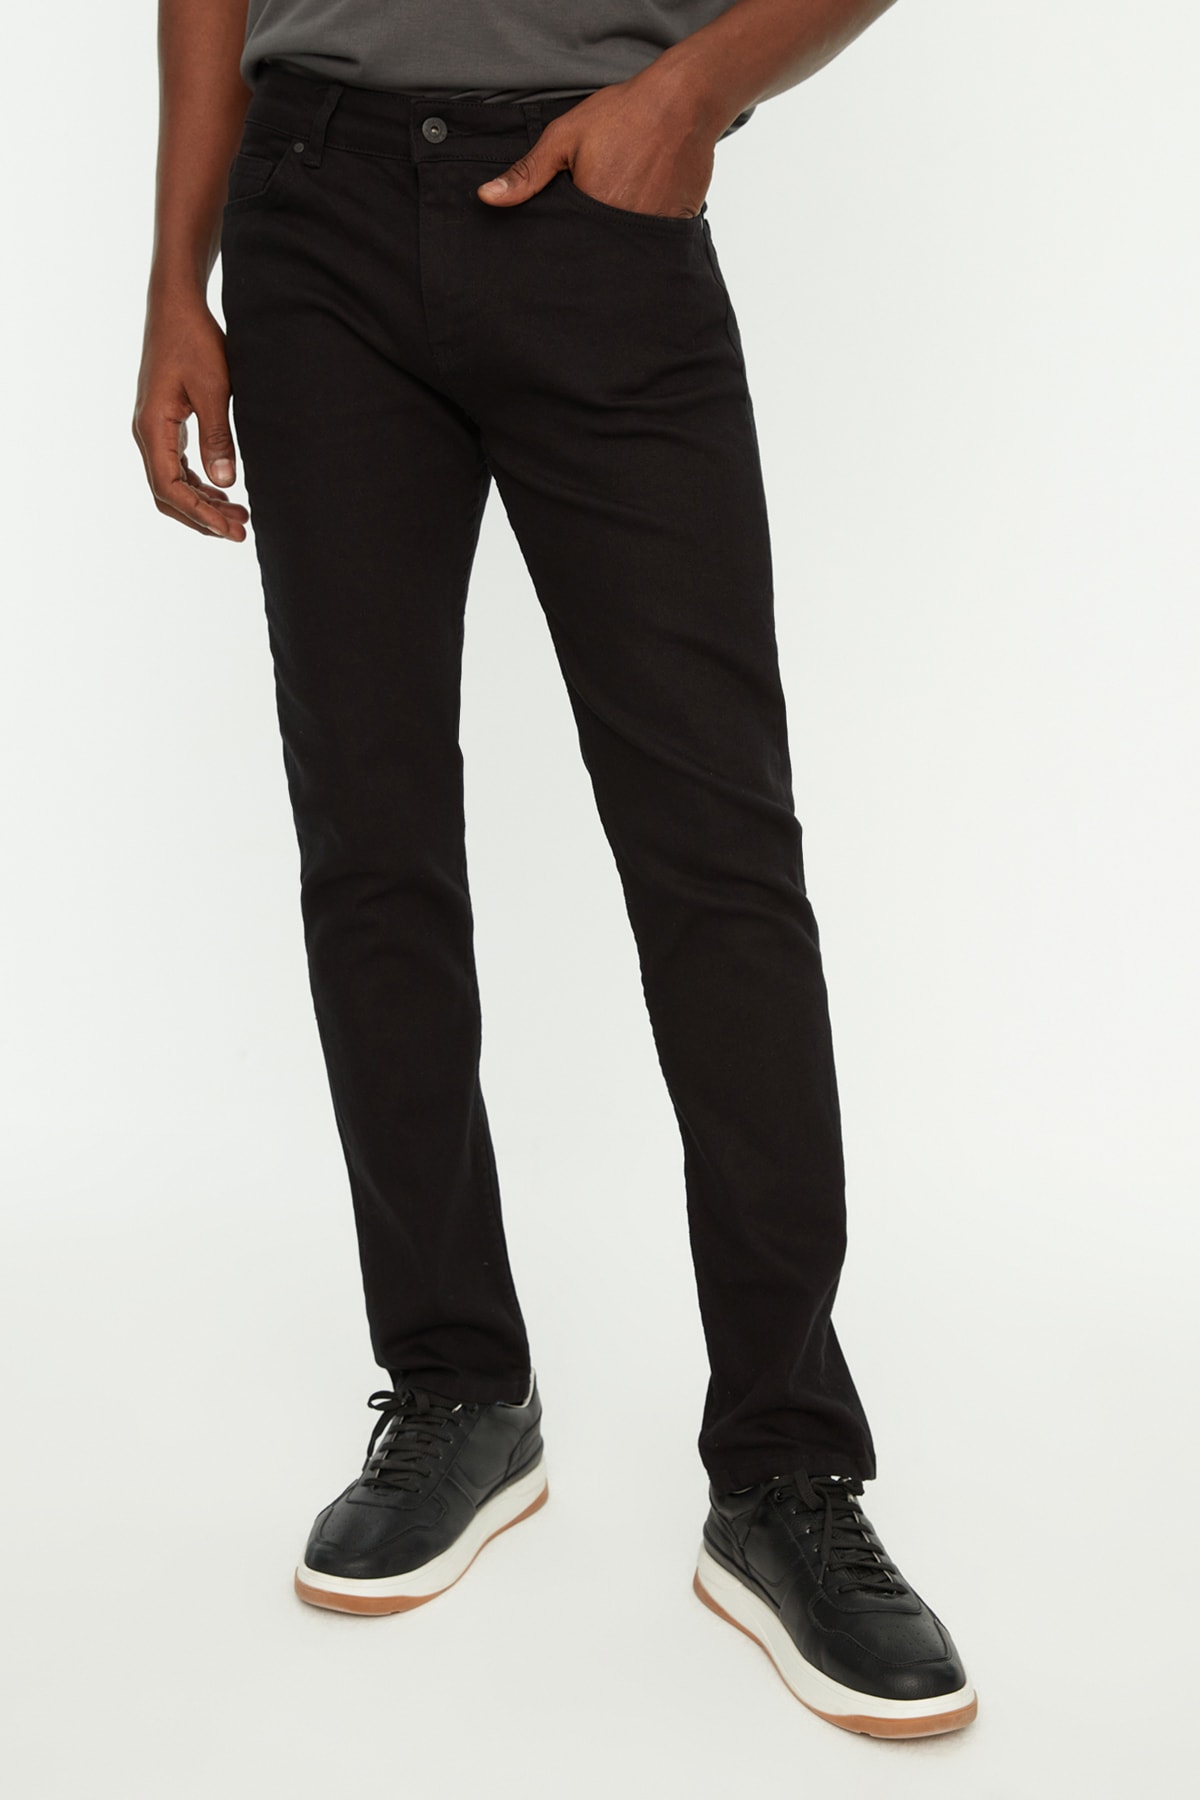 Джинсы Trendyol скинни из нелиняющего материала, черный джинсы скинни uniqlo размер 32 черный